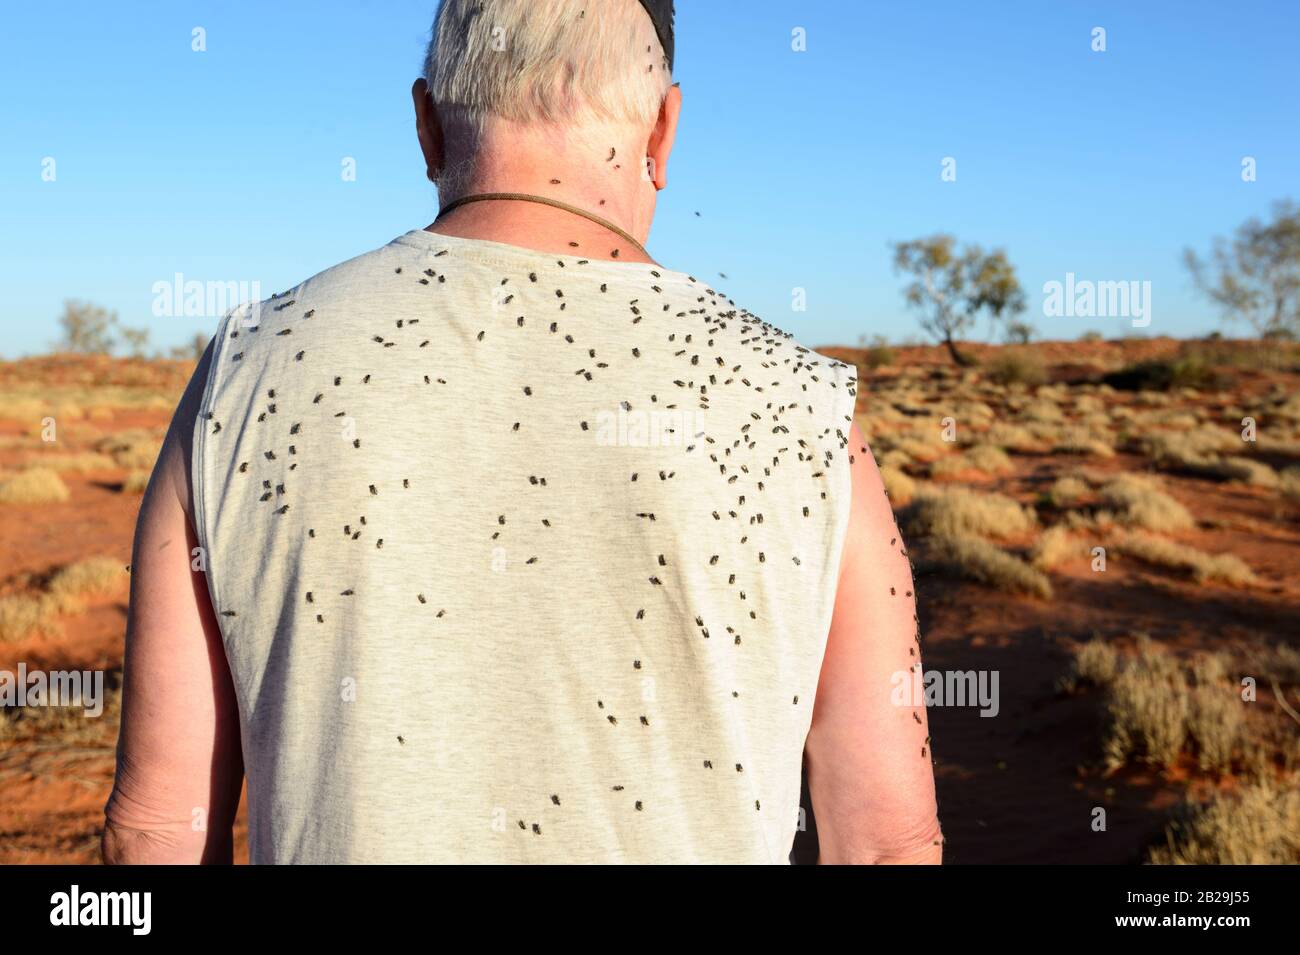 Zahlreiche Fliegen auf dem Rücken eines Mannes, Northern Territory, NT, Australien Stockfoto